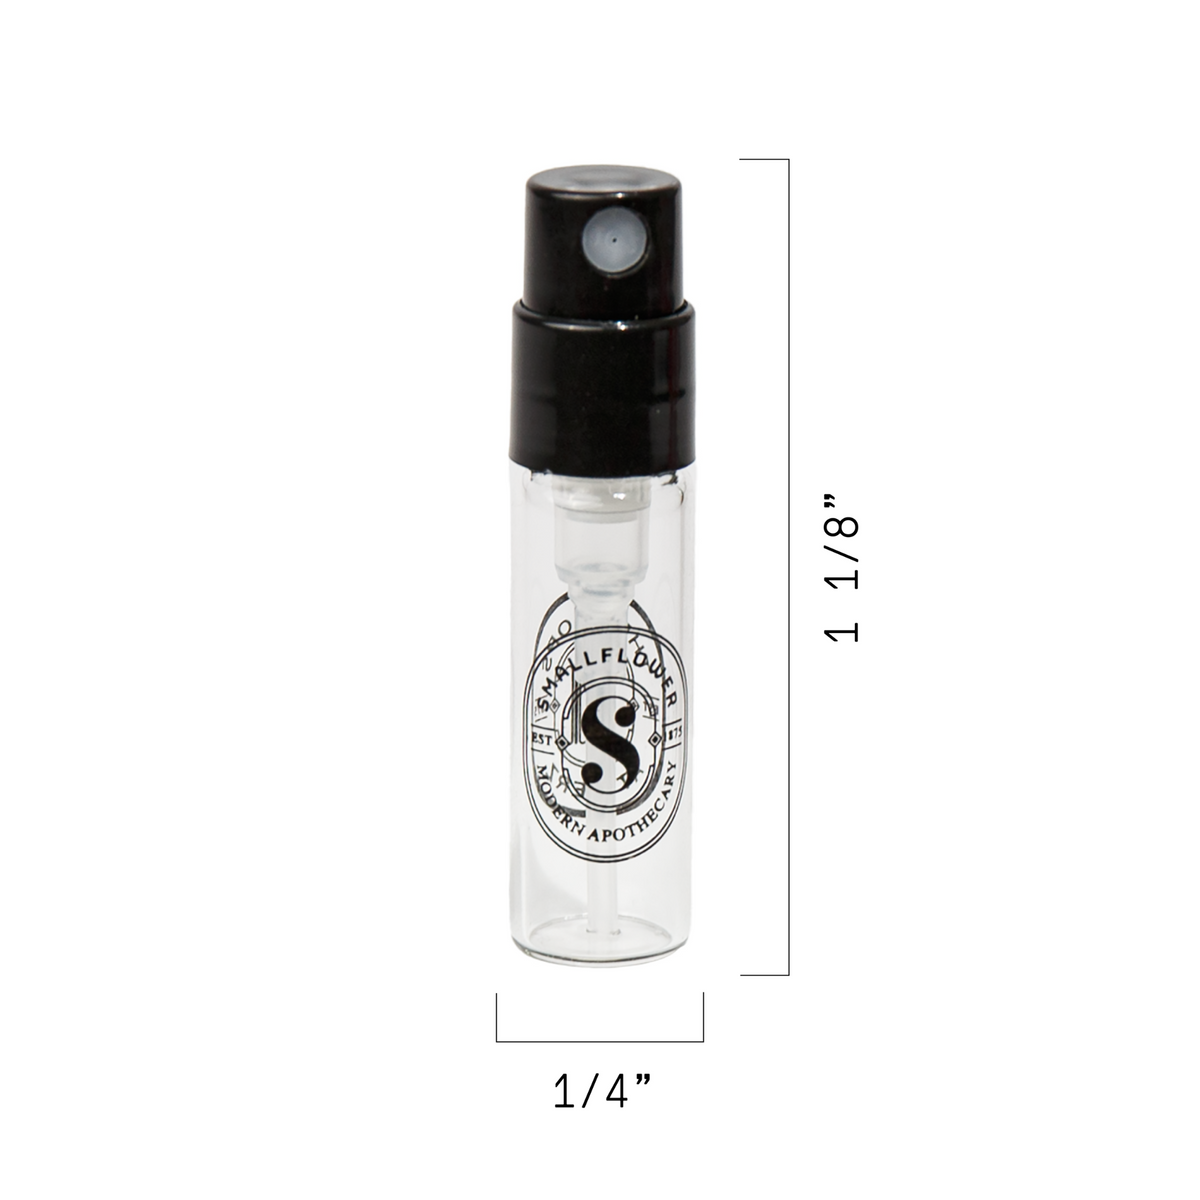 Jeroboam Paris Sample - Gozo Extrait de Parfum (0.3 ml vial) #10084491